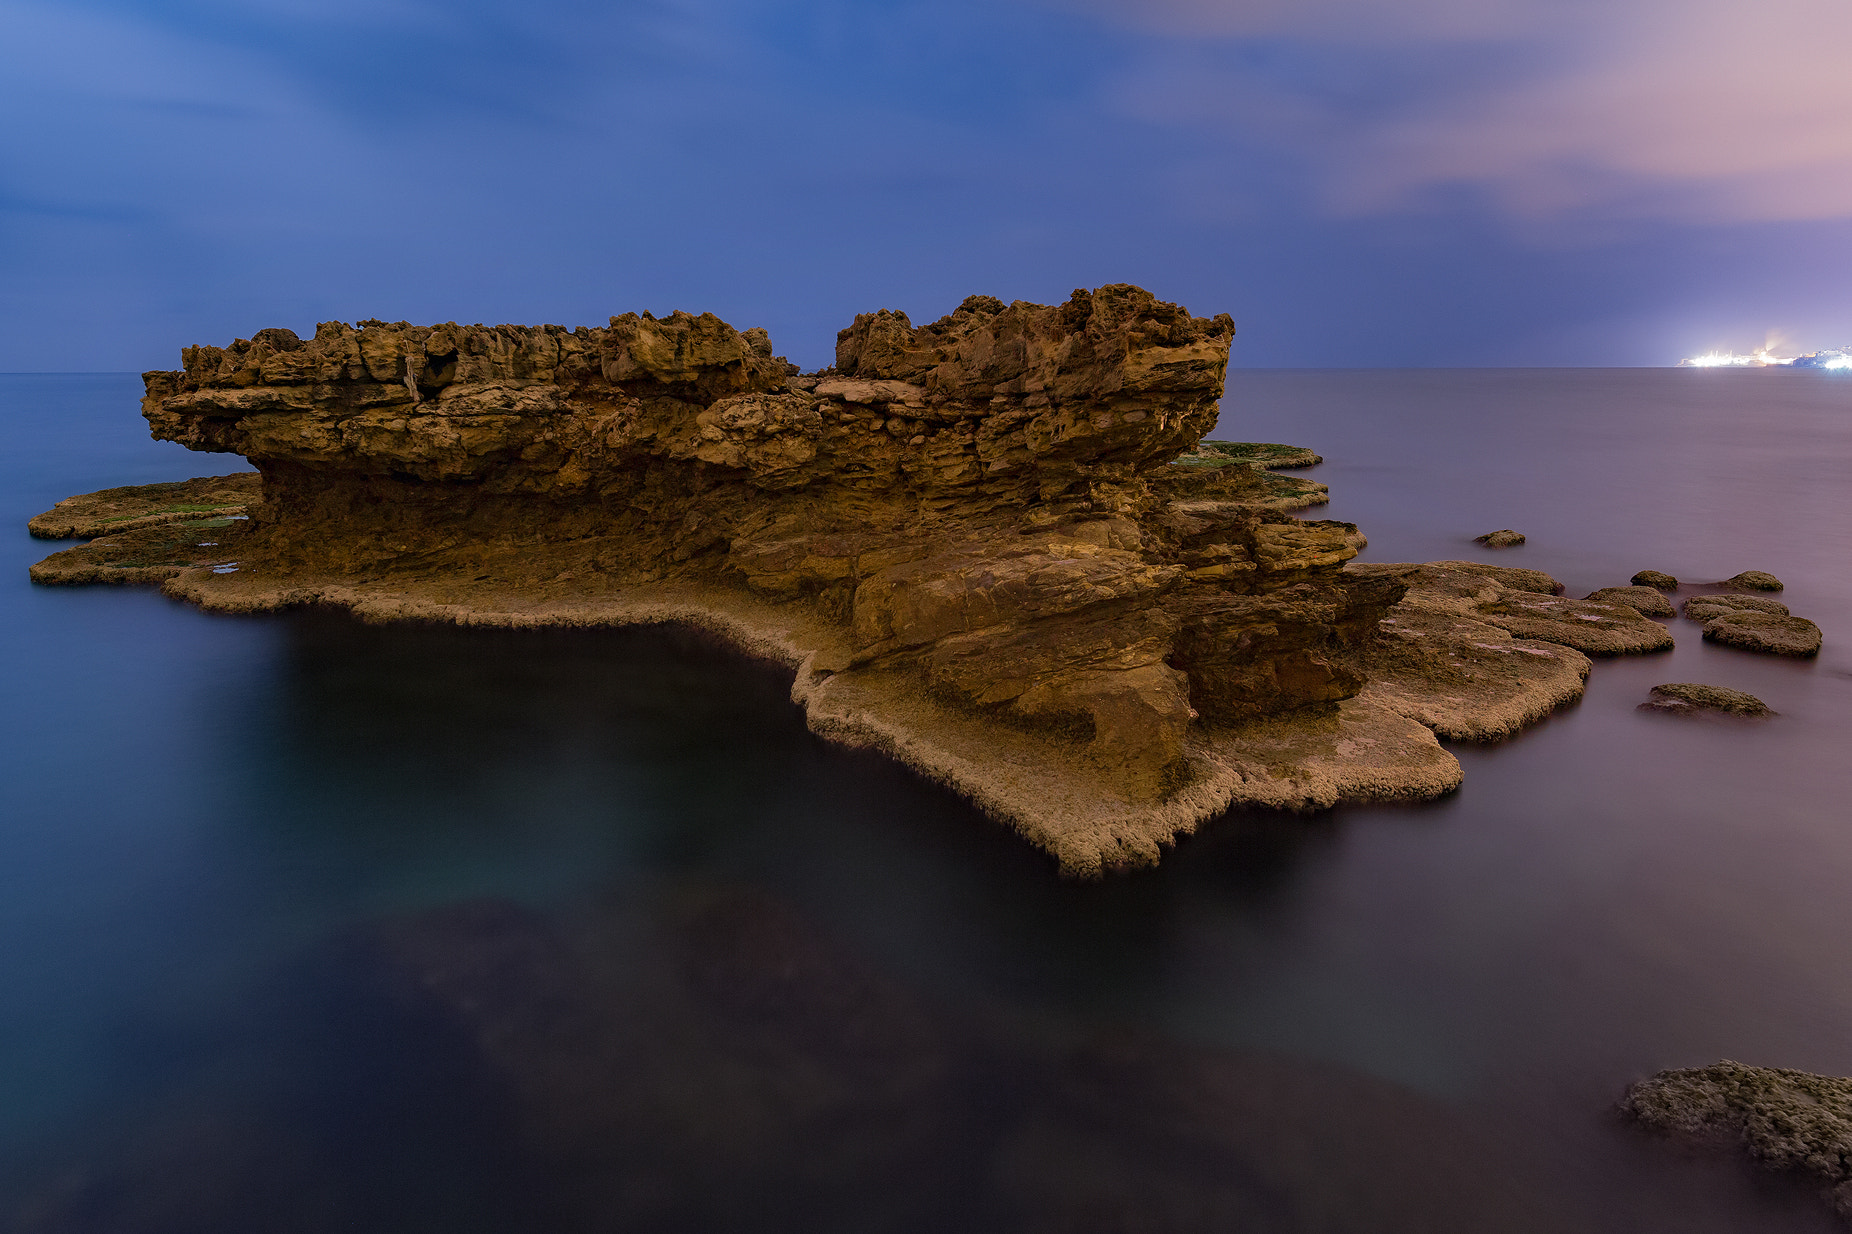 Canon EOS 6D sample photo. My sea rock photography